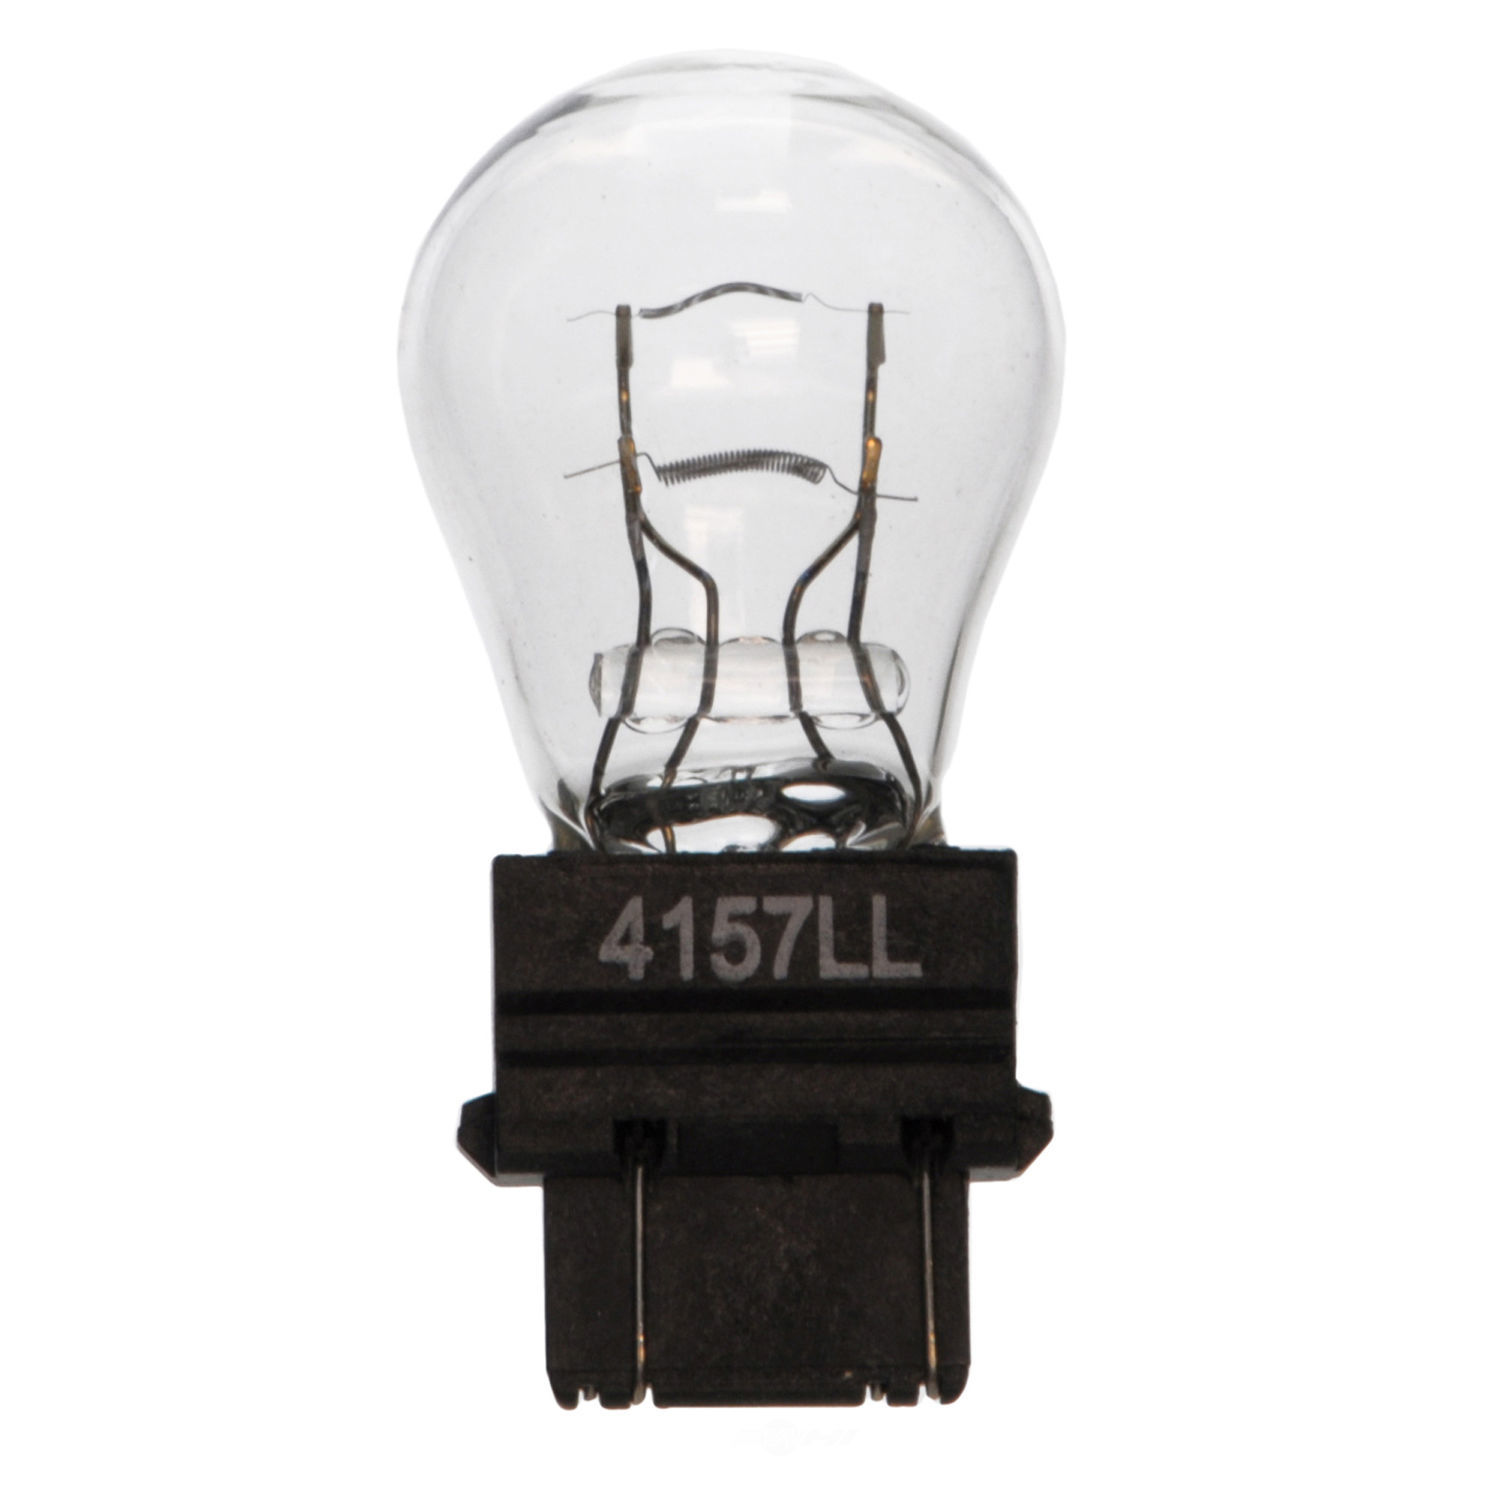 WAGNER LIGHTING - Parking Light Bulb - WLP 4157LL